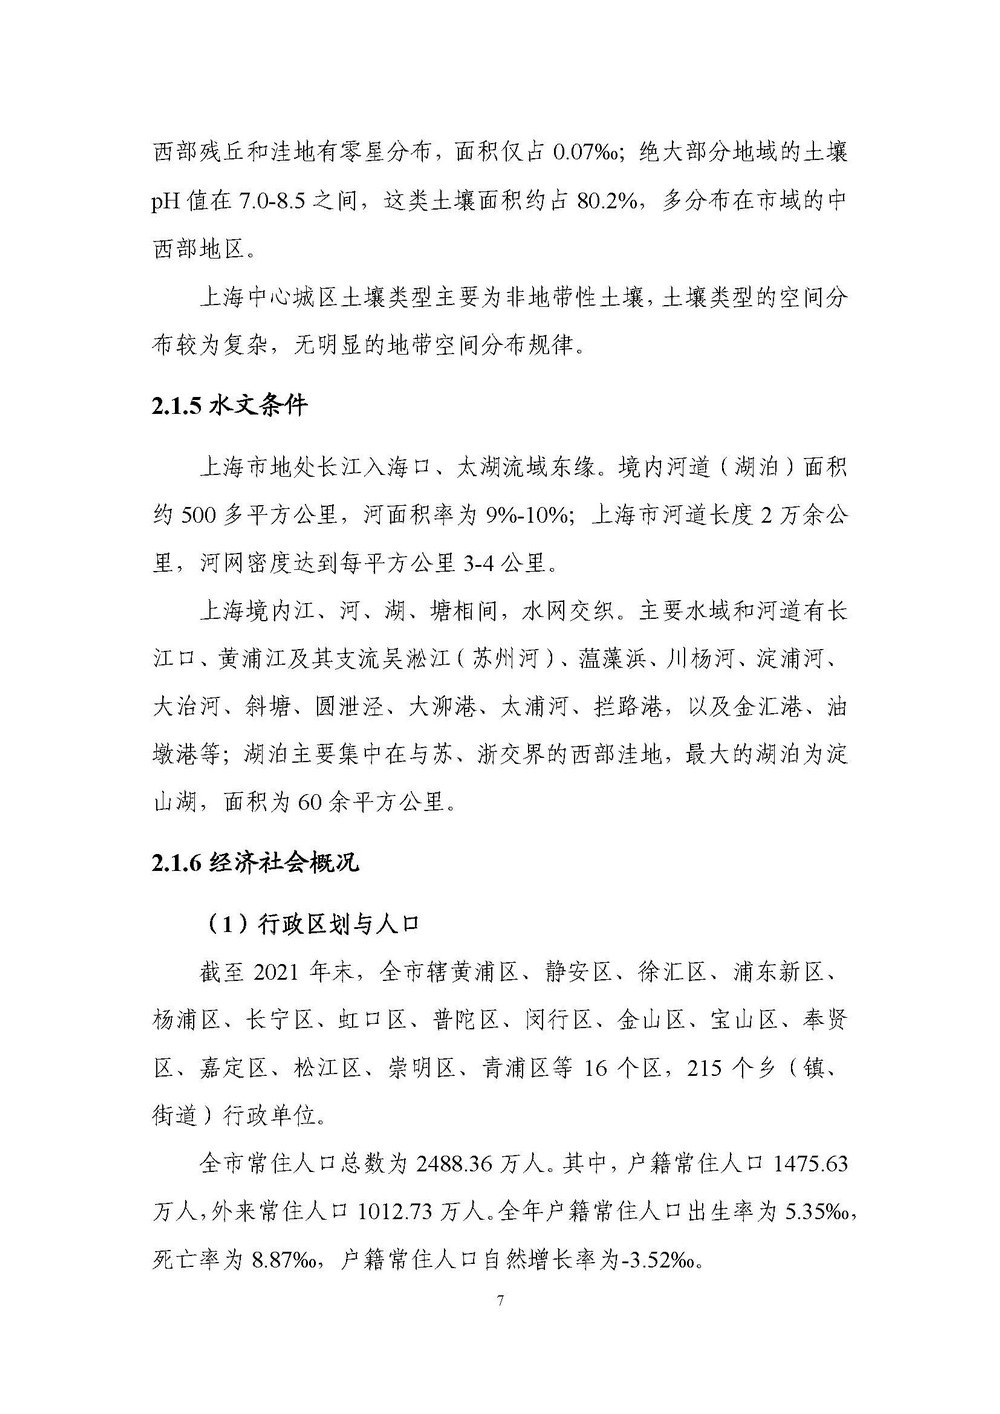 上海市森林和林地保护利用规划文本 公开稿 附图_页面_10.jpg